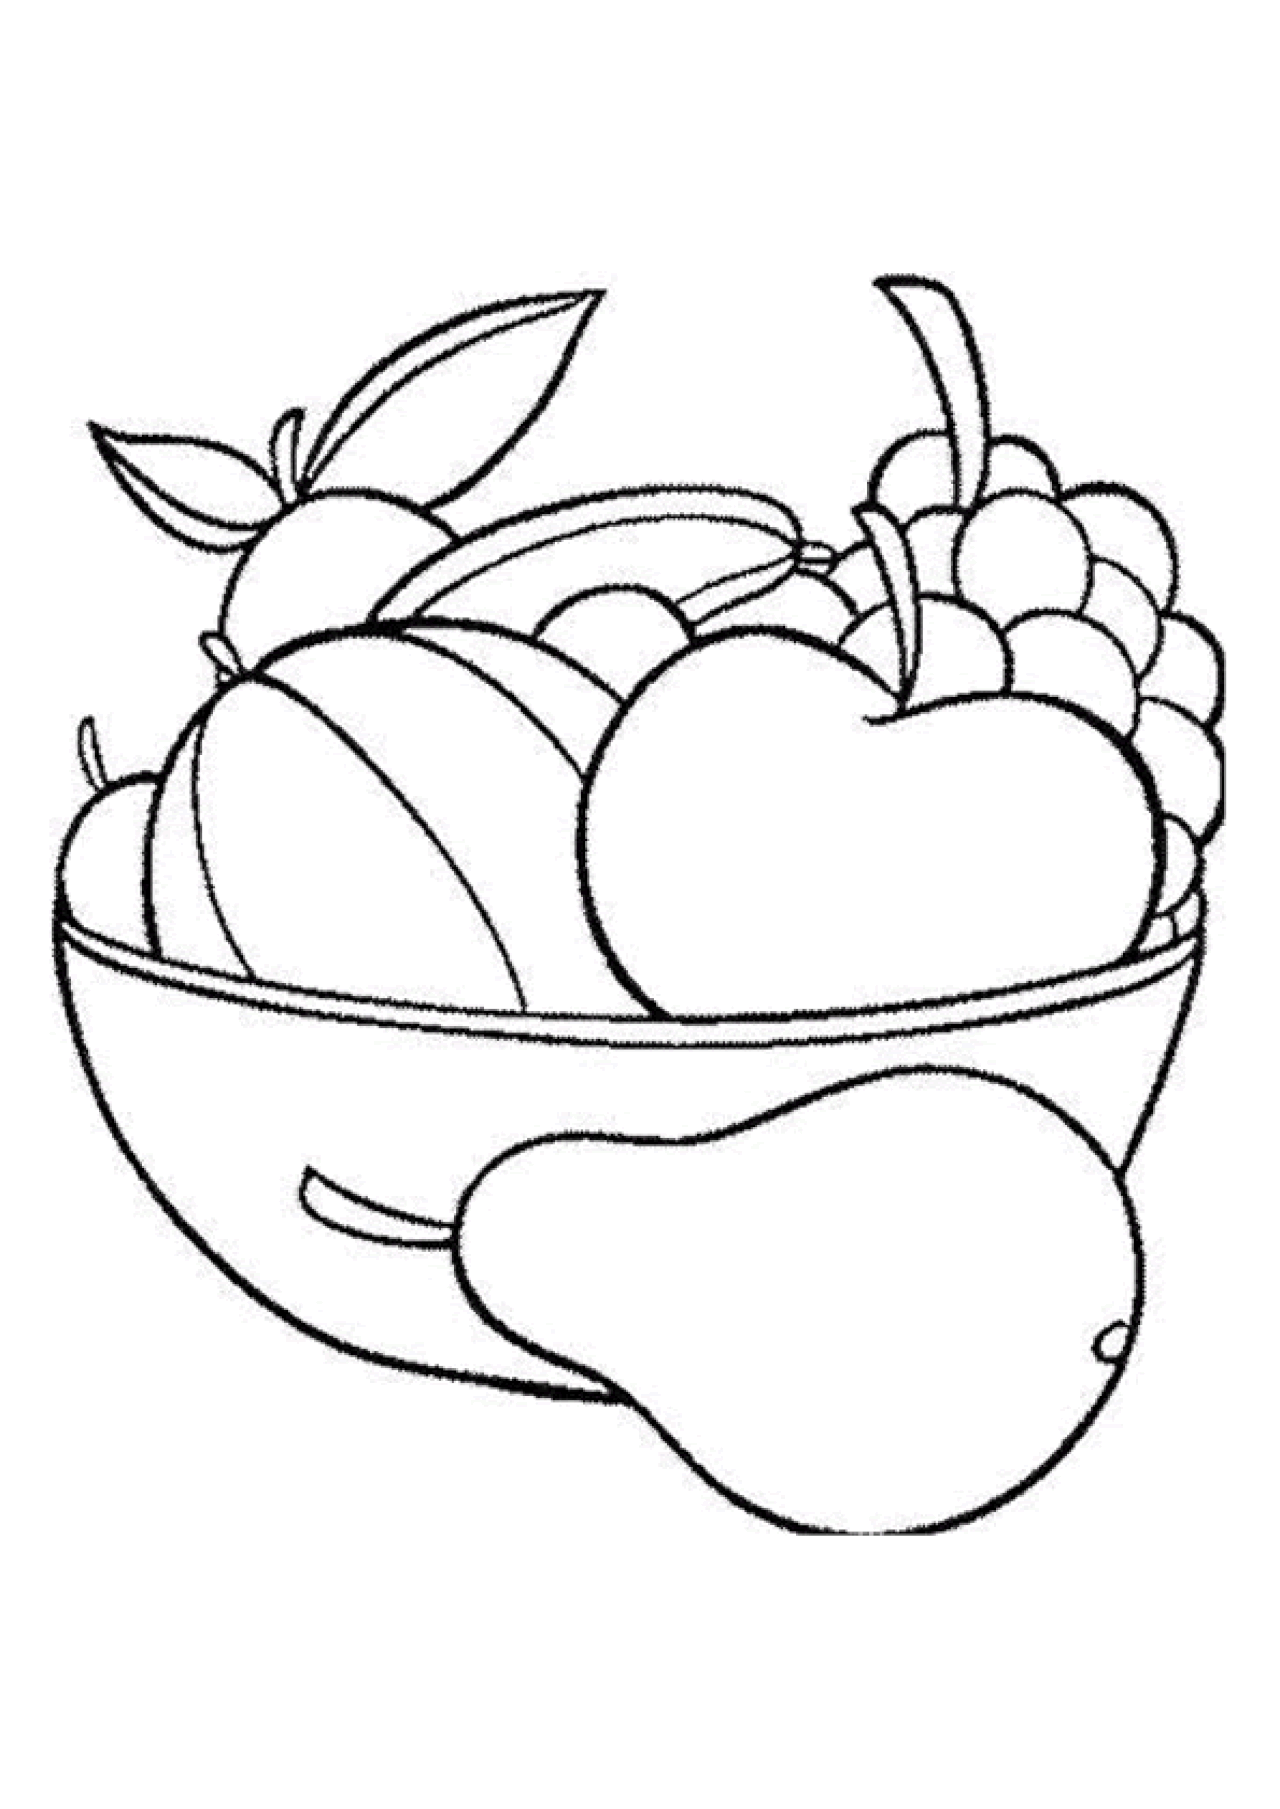 Dessin panier de fruits et légumes